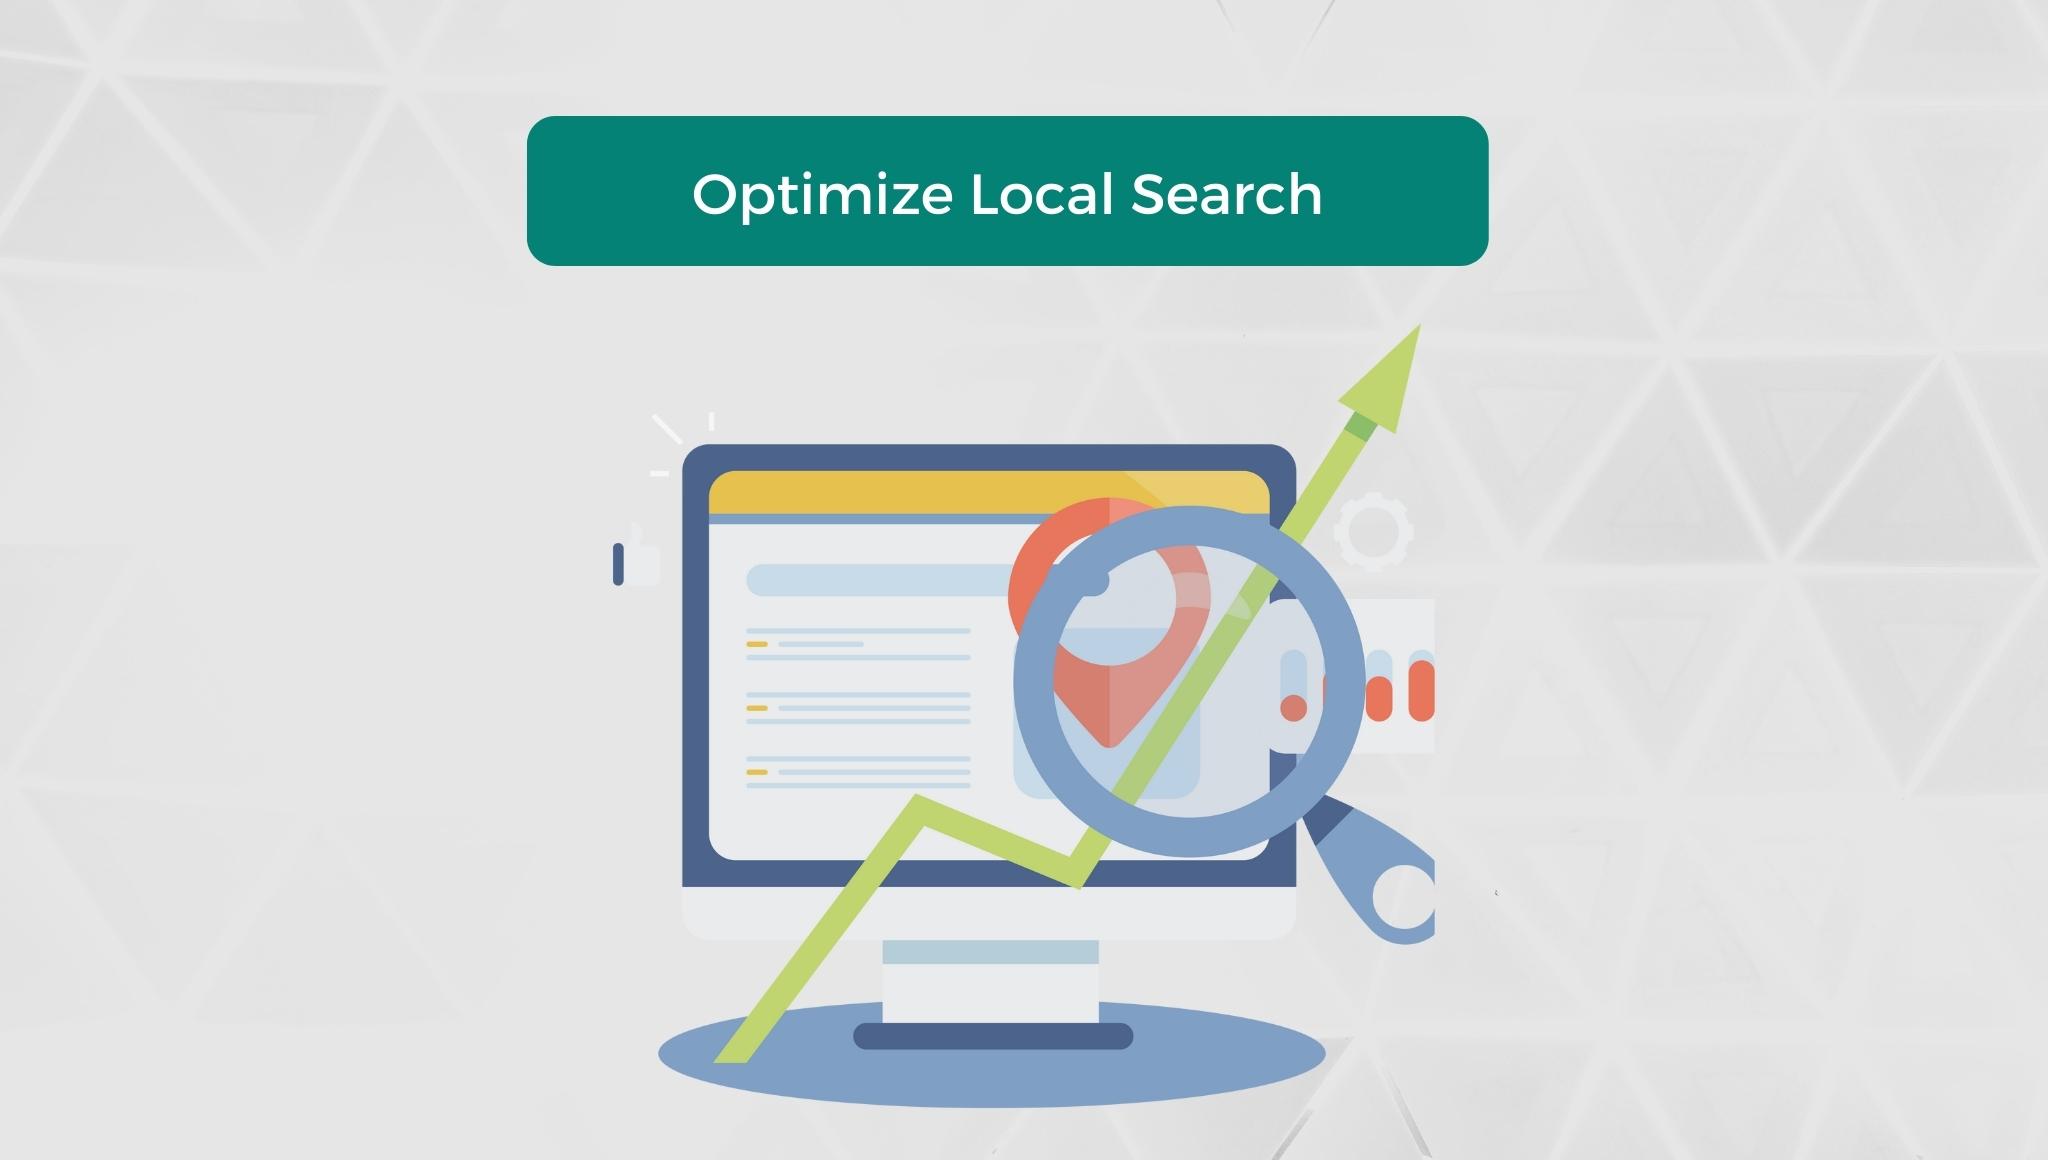 Optimize Local Search